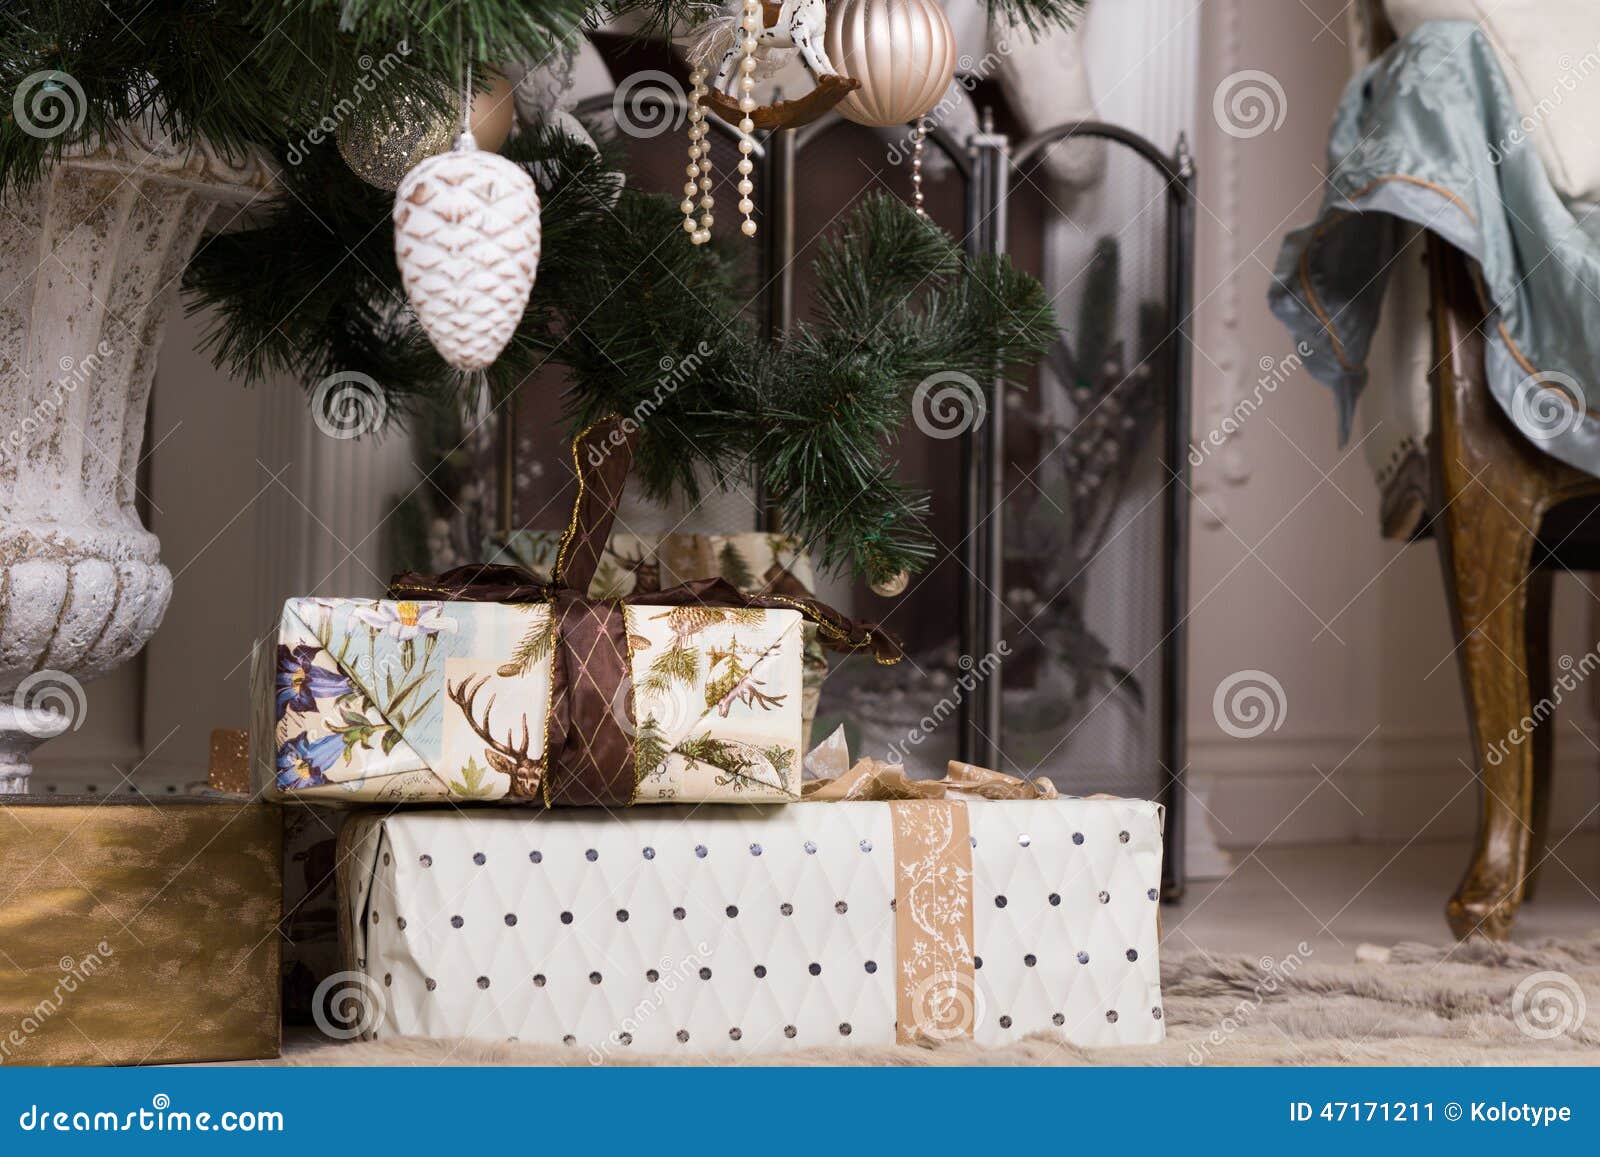 Bei Regali Di Natale.Bei Regali Di Natale Sotto L Albero Di Natale Immagine Stock Immagine Di Natale Pavimento 47171211